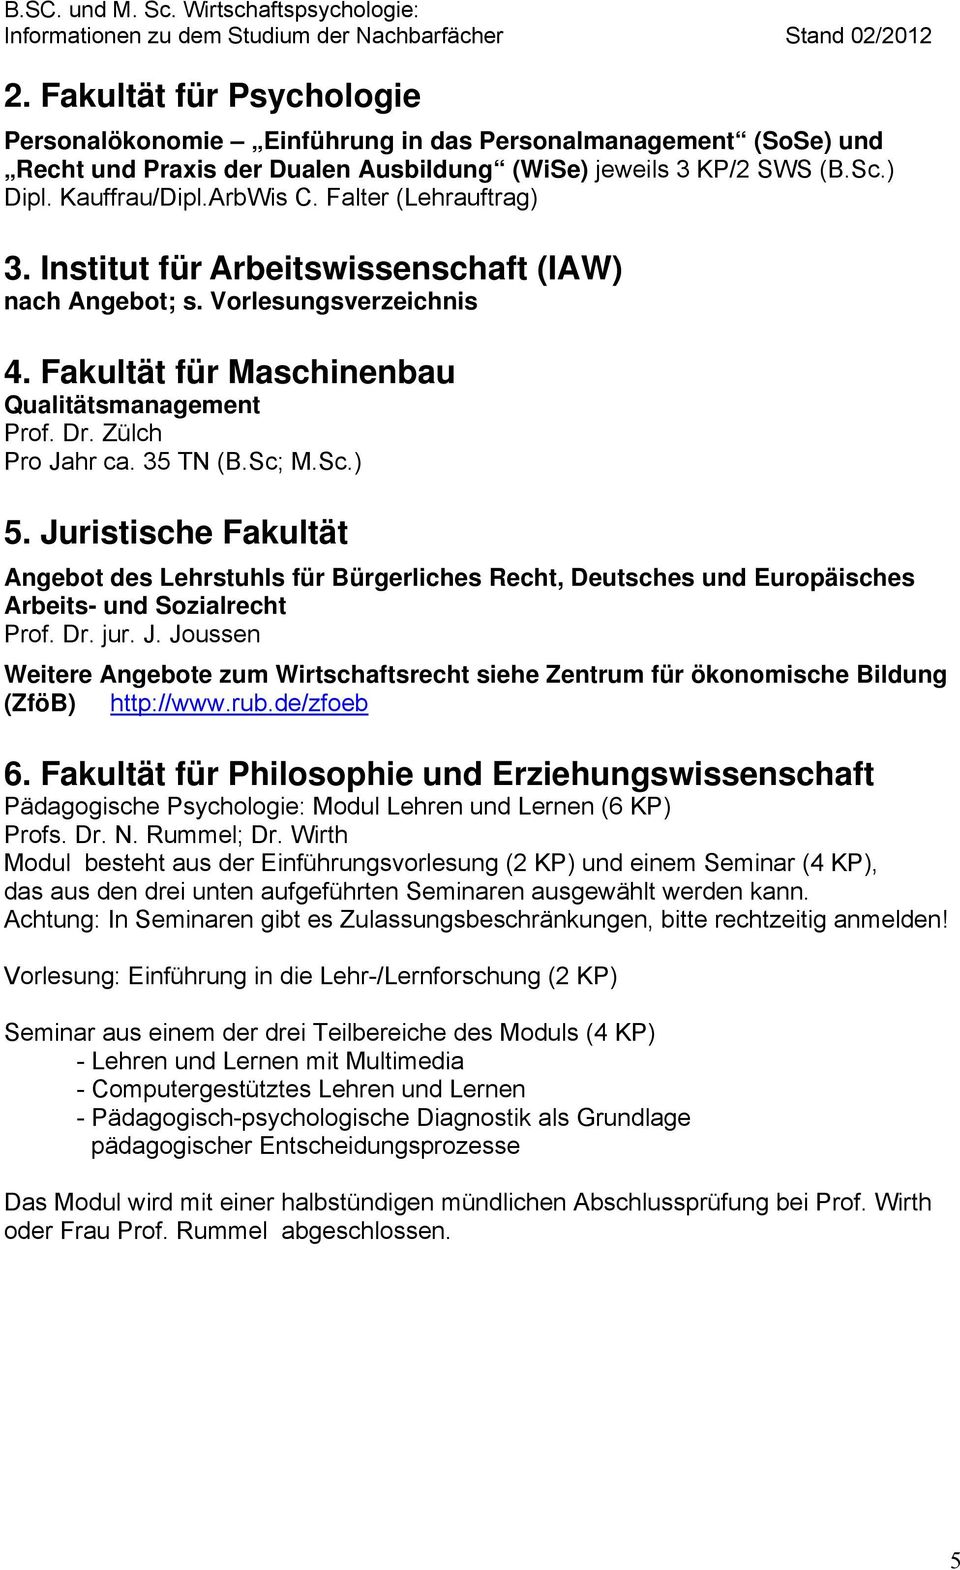 Juristische Fakultät Angebot des Lehrstuhls für Bürgerliches Recht, Deutsches und Europäisches Arbeits- und Sozialrecht Prof. Dr. jur. J.